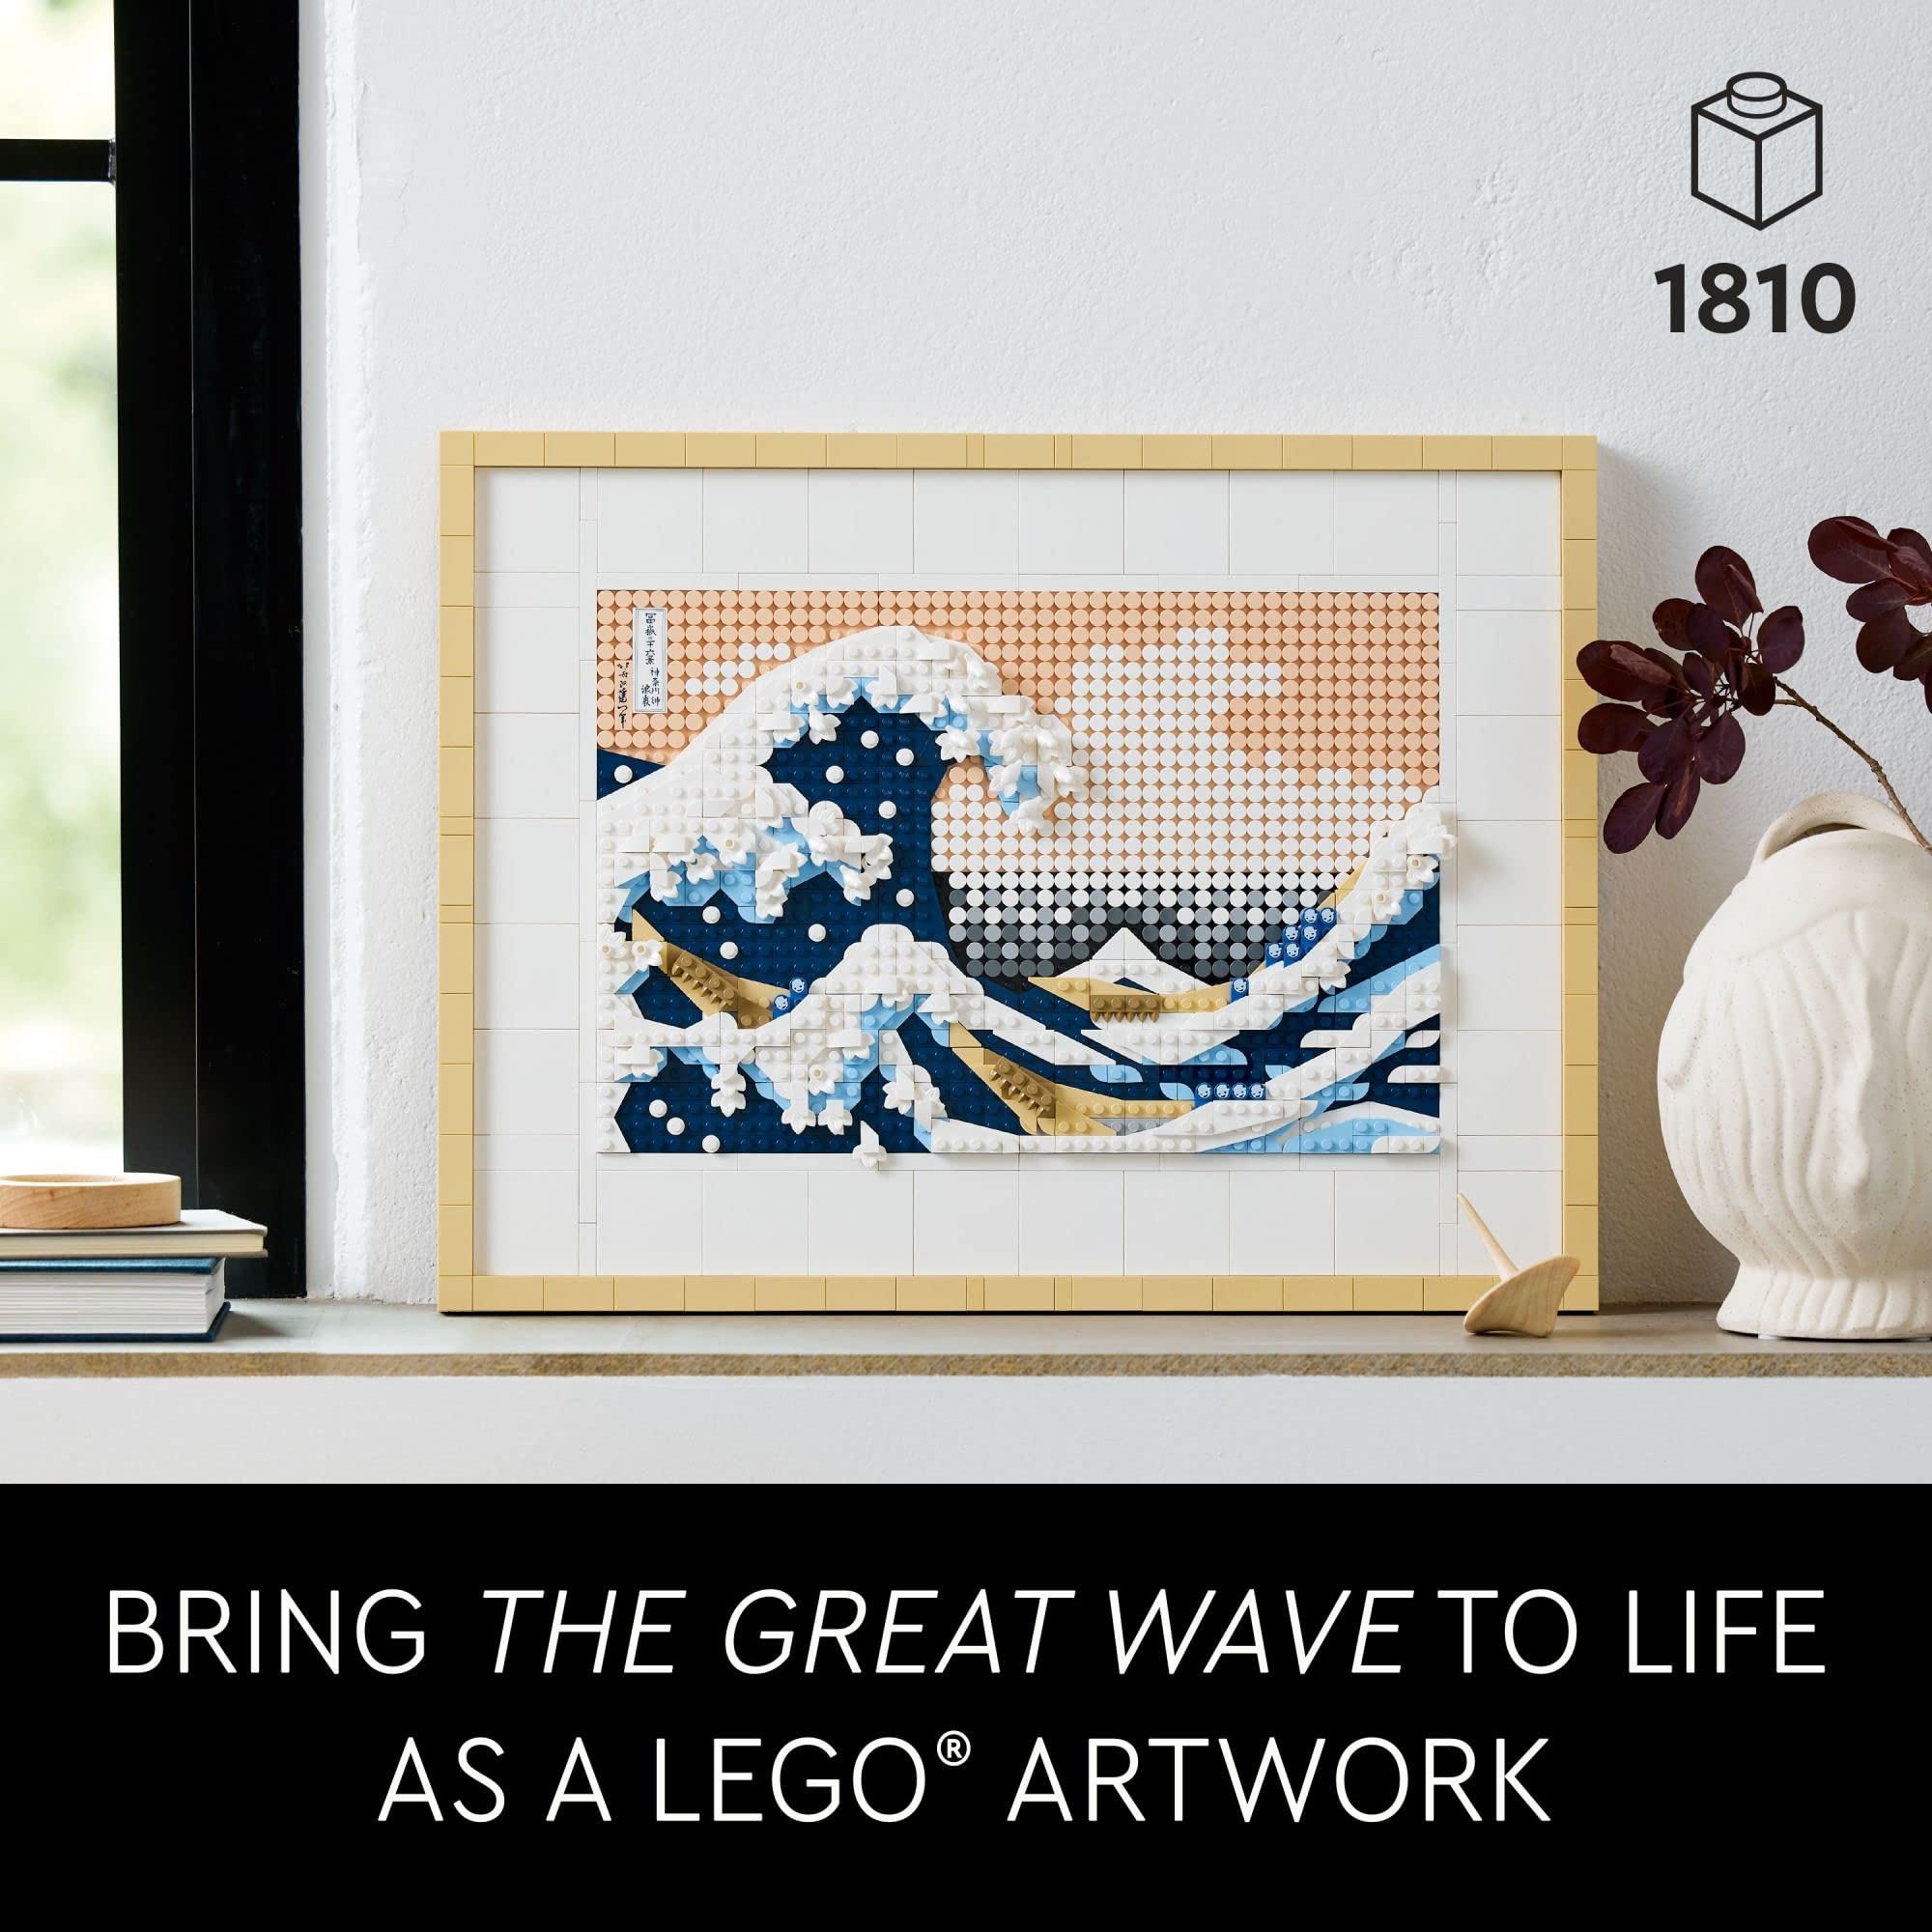 LEGO Art 31208 Hokusai – The Great Wave